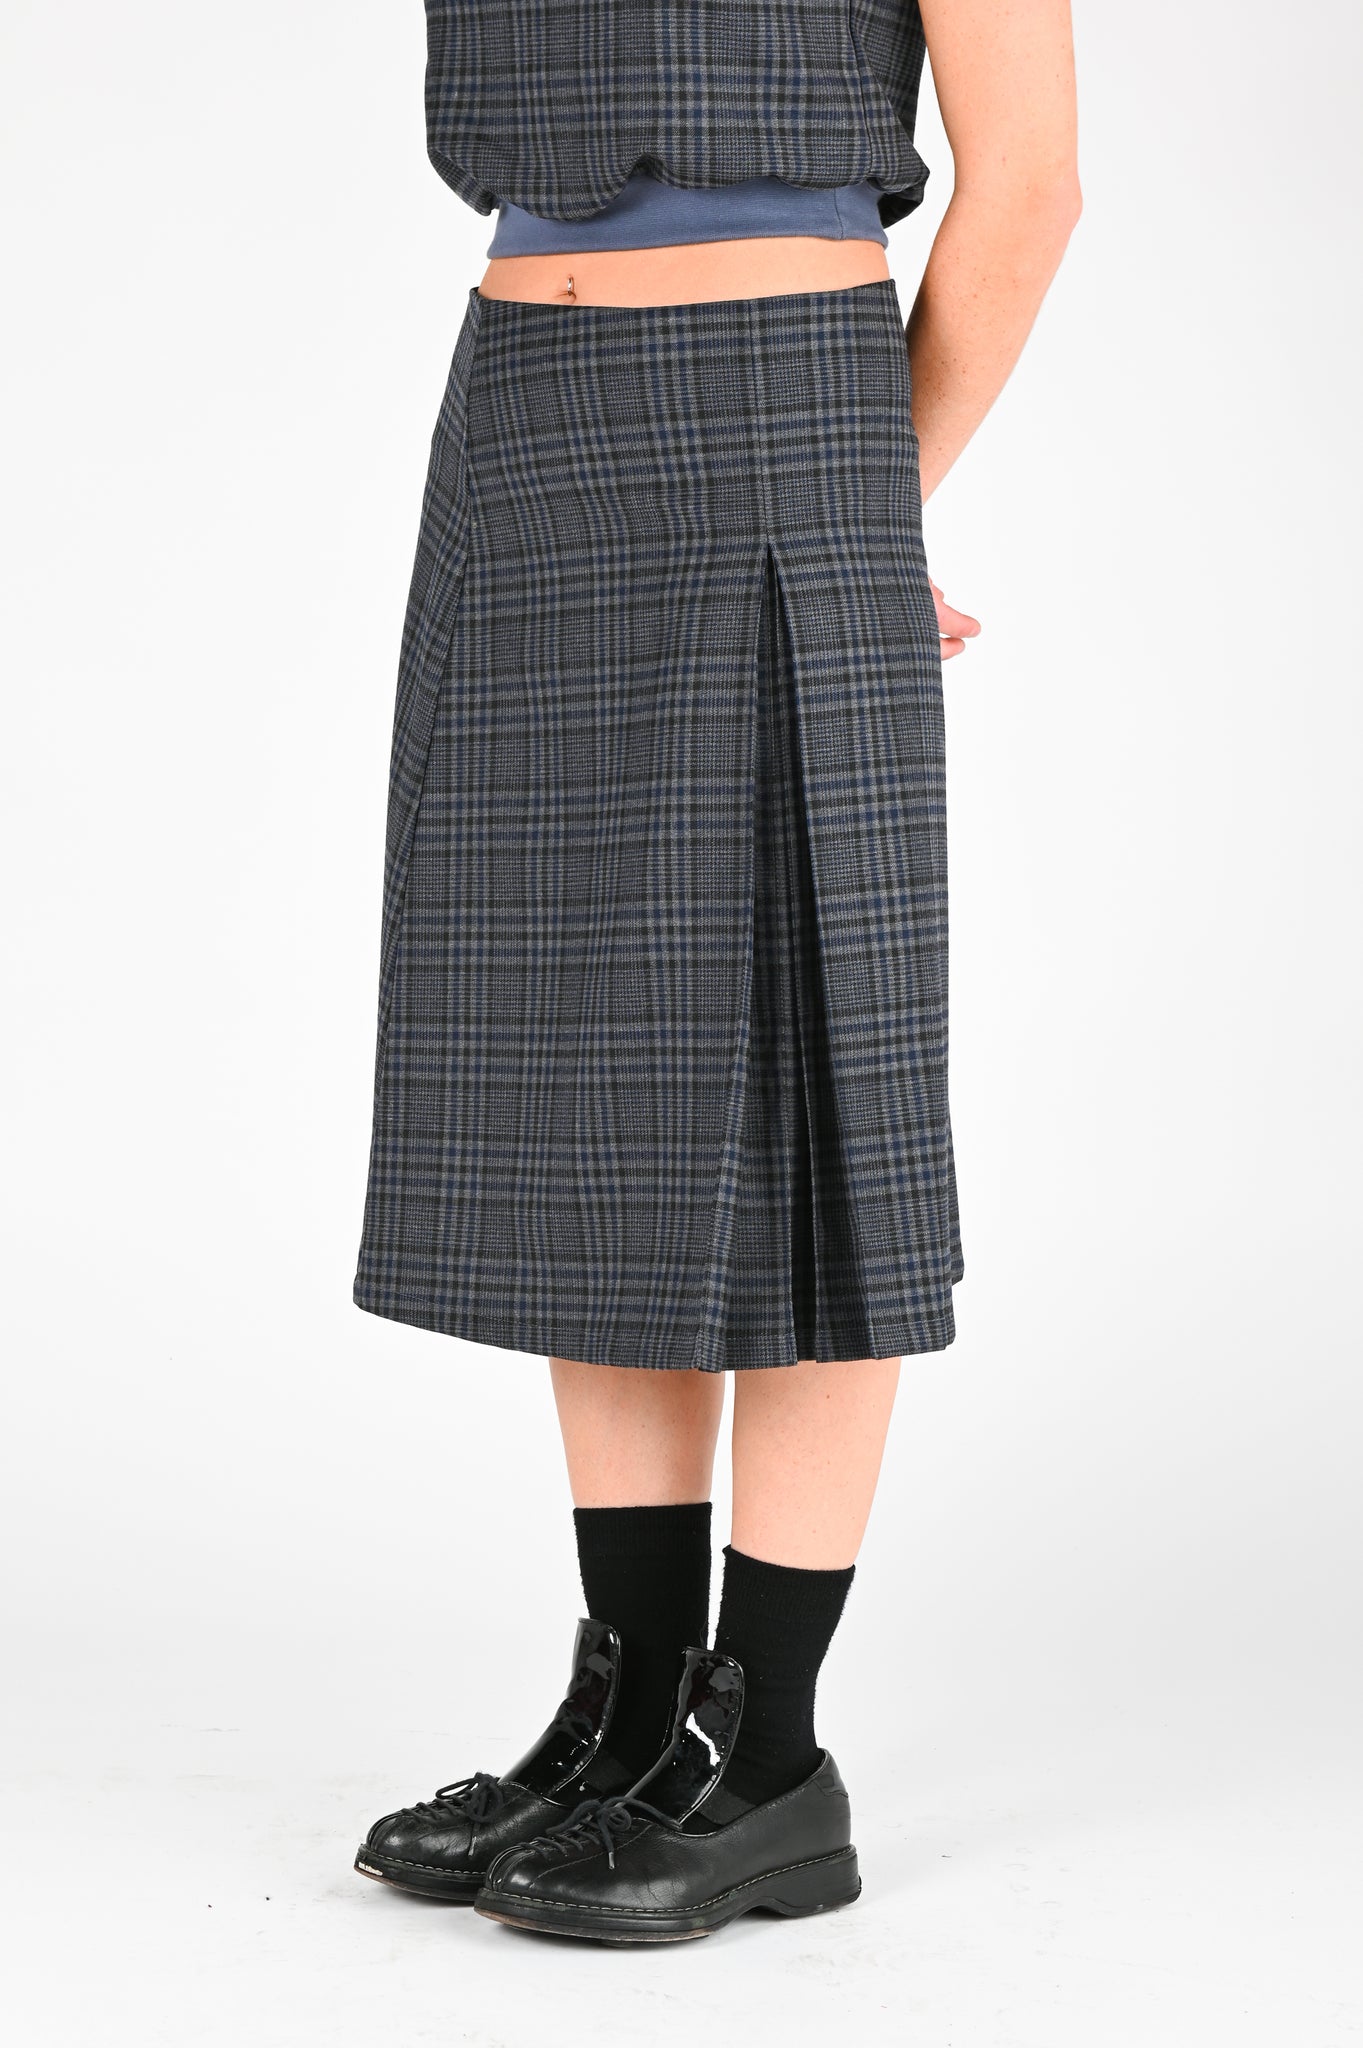 Par Moi 'Anika' Skirt in Check